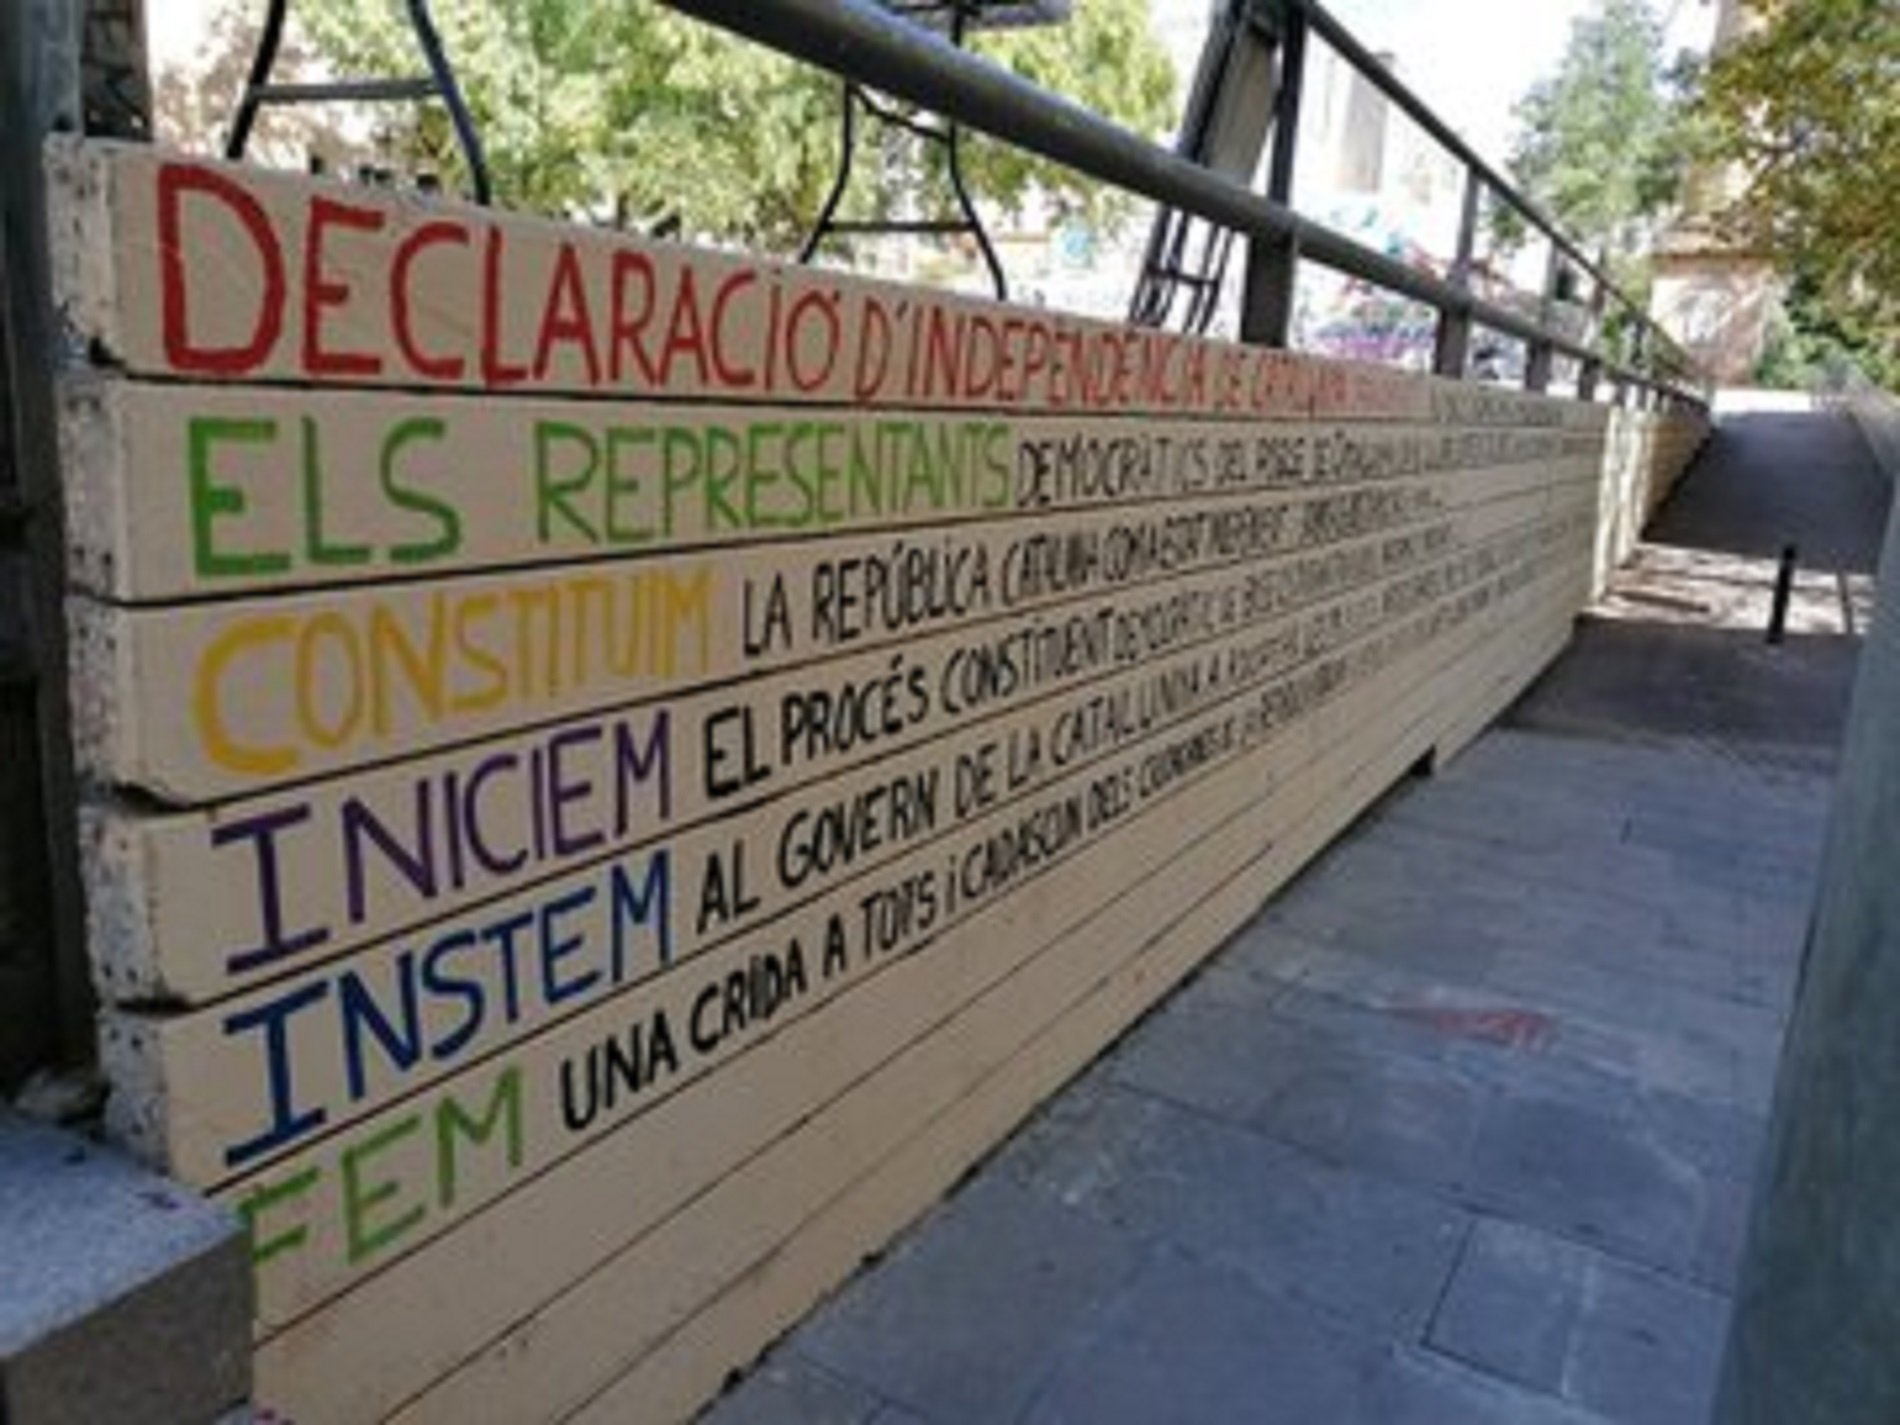 Multa de 2.100 euros per escriure la declaració d'independència a una plaça